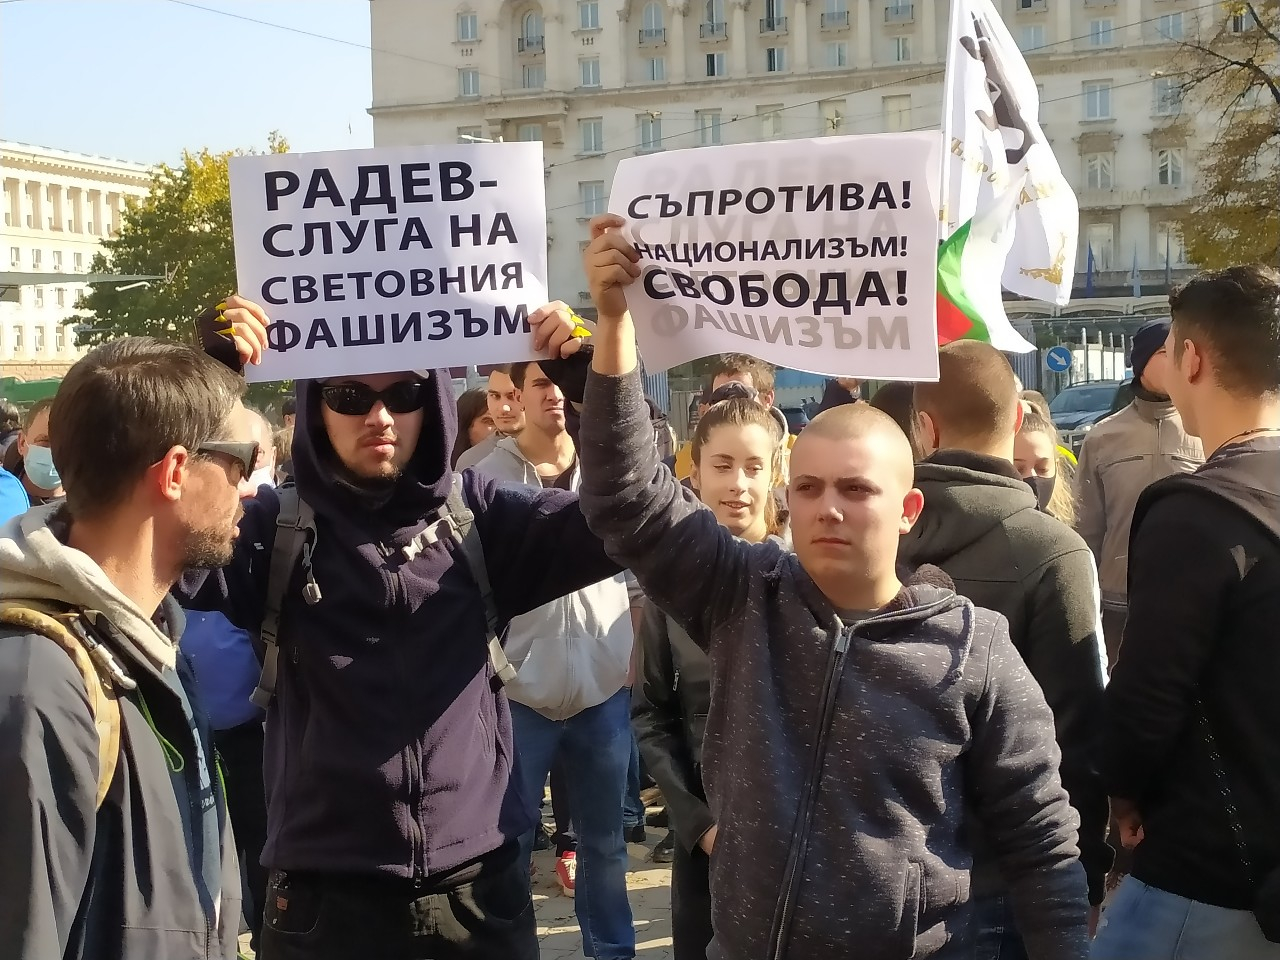 Протест бушува под прозорците на Кацаров: Стойчо, ти си вирус за здравеопазването НА ЖИВО